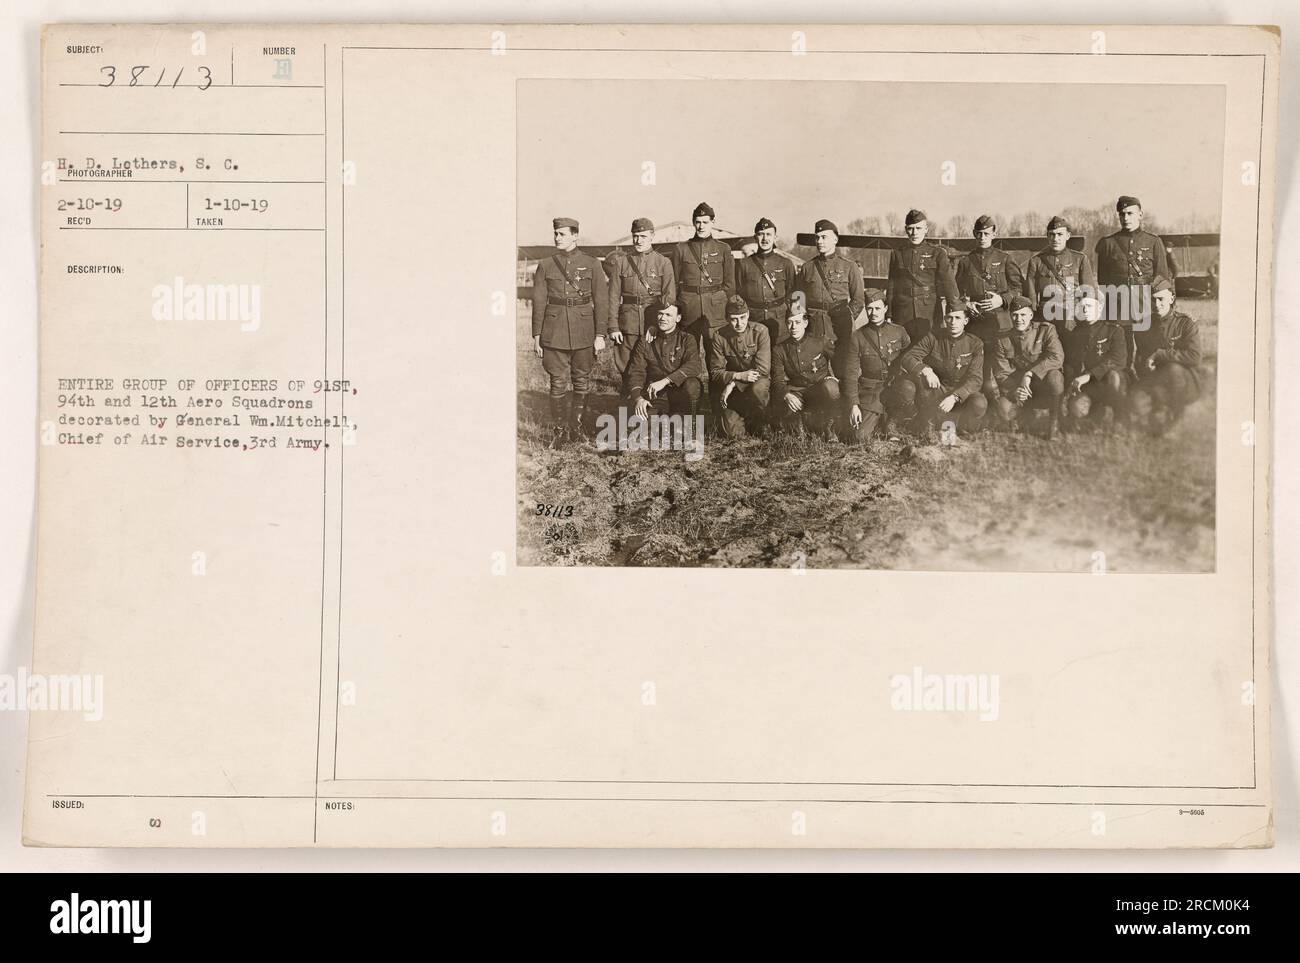 La foto di gruppo mostra gli ufficiali del 918th, 94th e 12th Aero Squadron decorati dal generale WN. Mitchell, capo del servizio aereo della 3rd Army. La foto è stata scattata il 10 febbraio 1919. Nota: 38113. Foto Stock